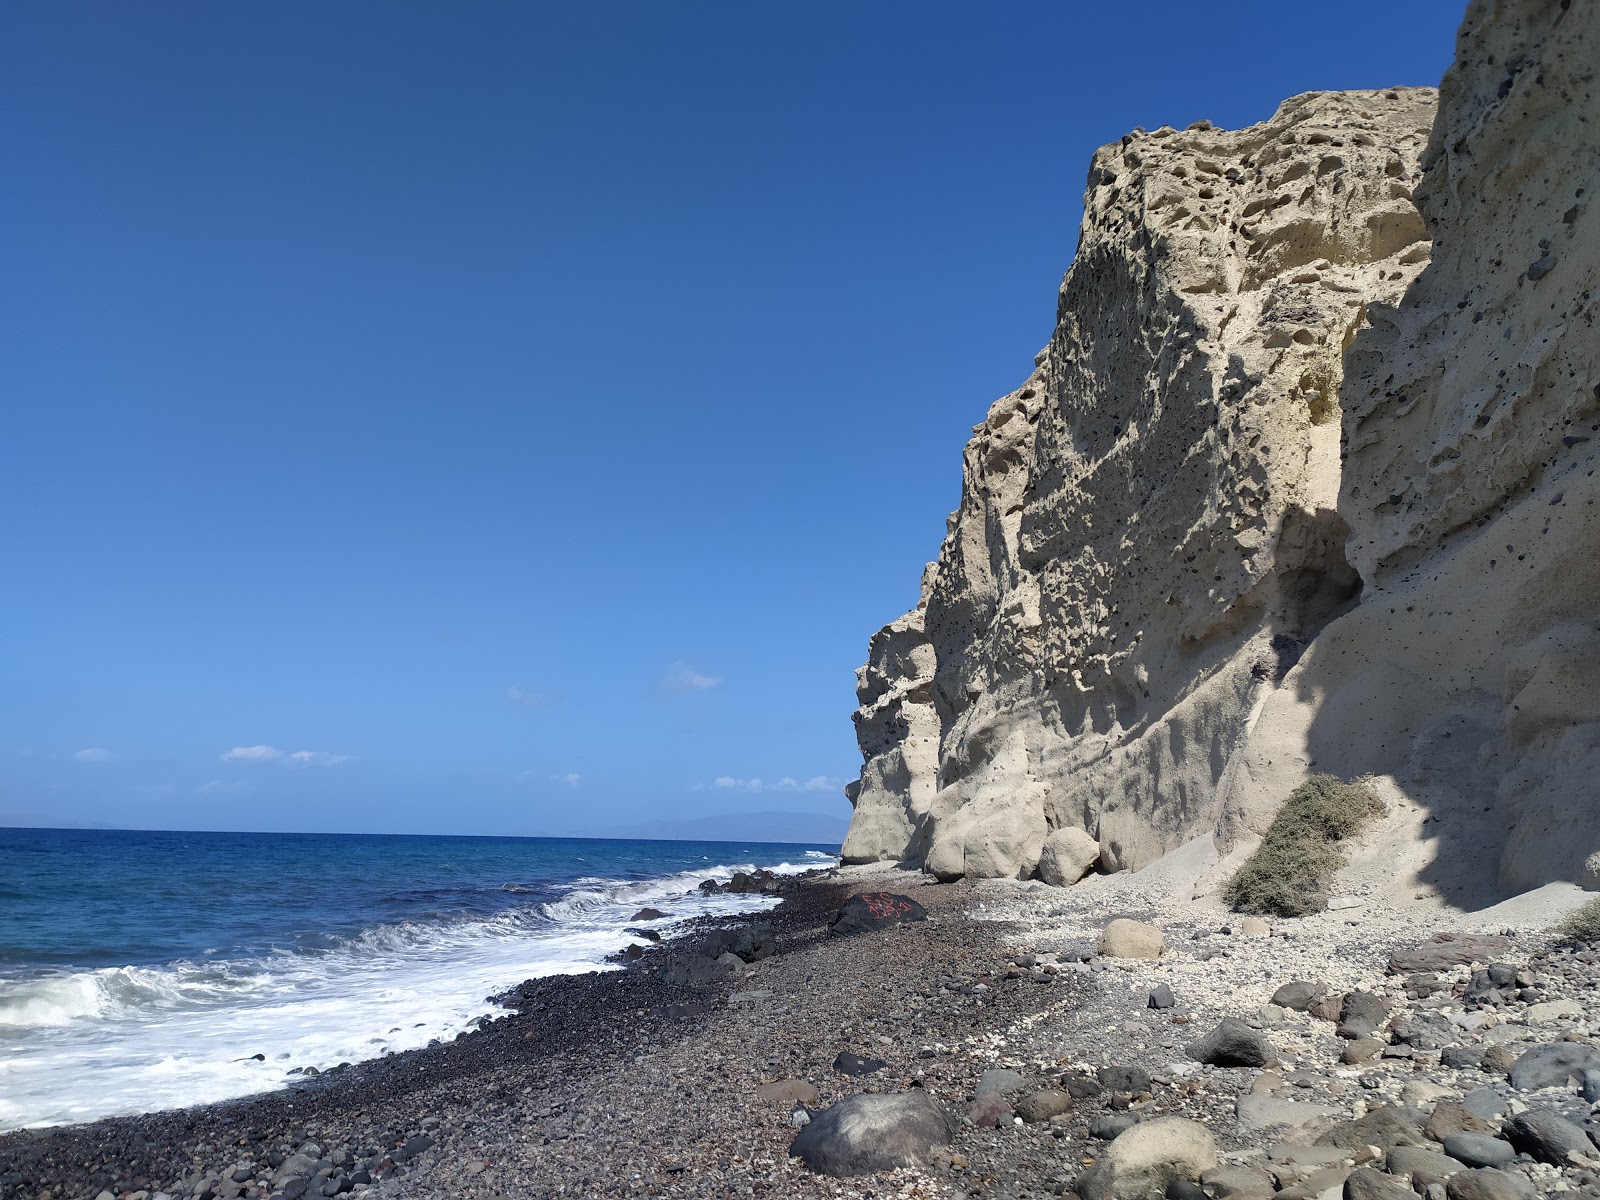 Paralia Katharos'in fotoğrafı geniş plaj ile birlikte